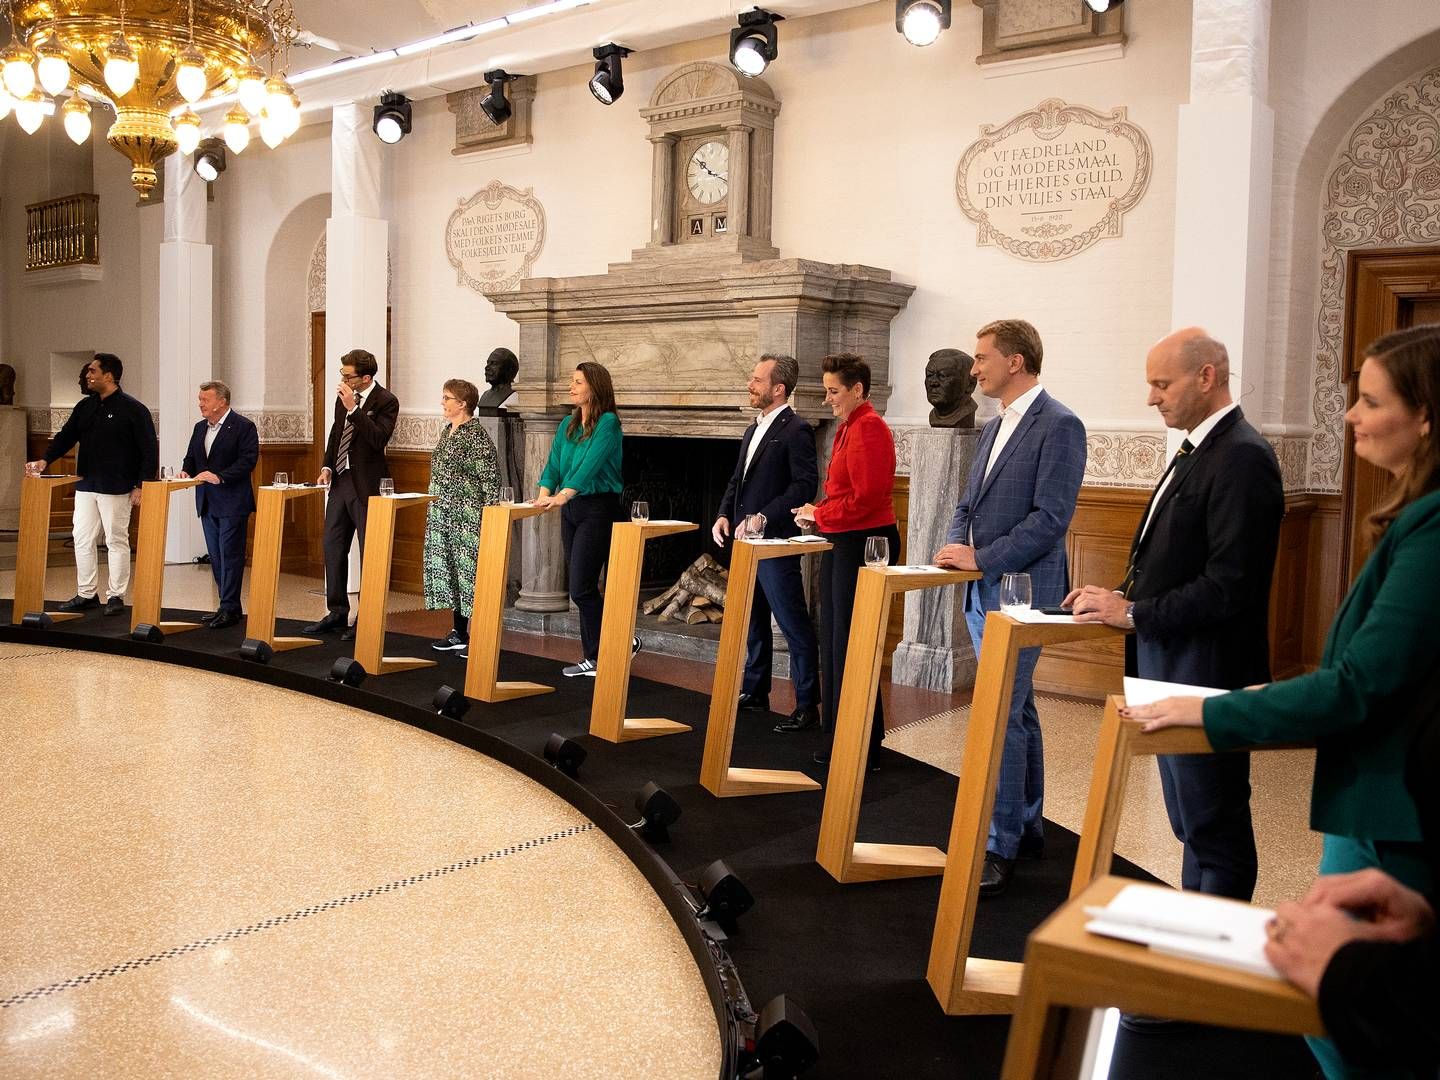 Valgkampen er i fuld gang - her et billede fra partilederdebat på dagen for valgudskrivelsen. | Foto: Finn Frandsen/Ritzau Scanpix